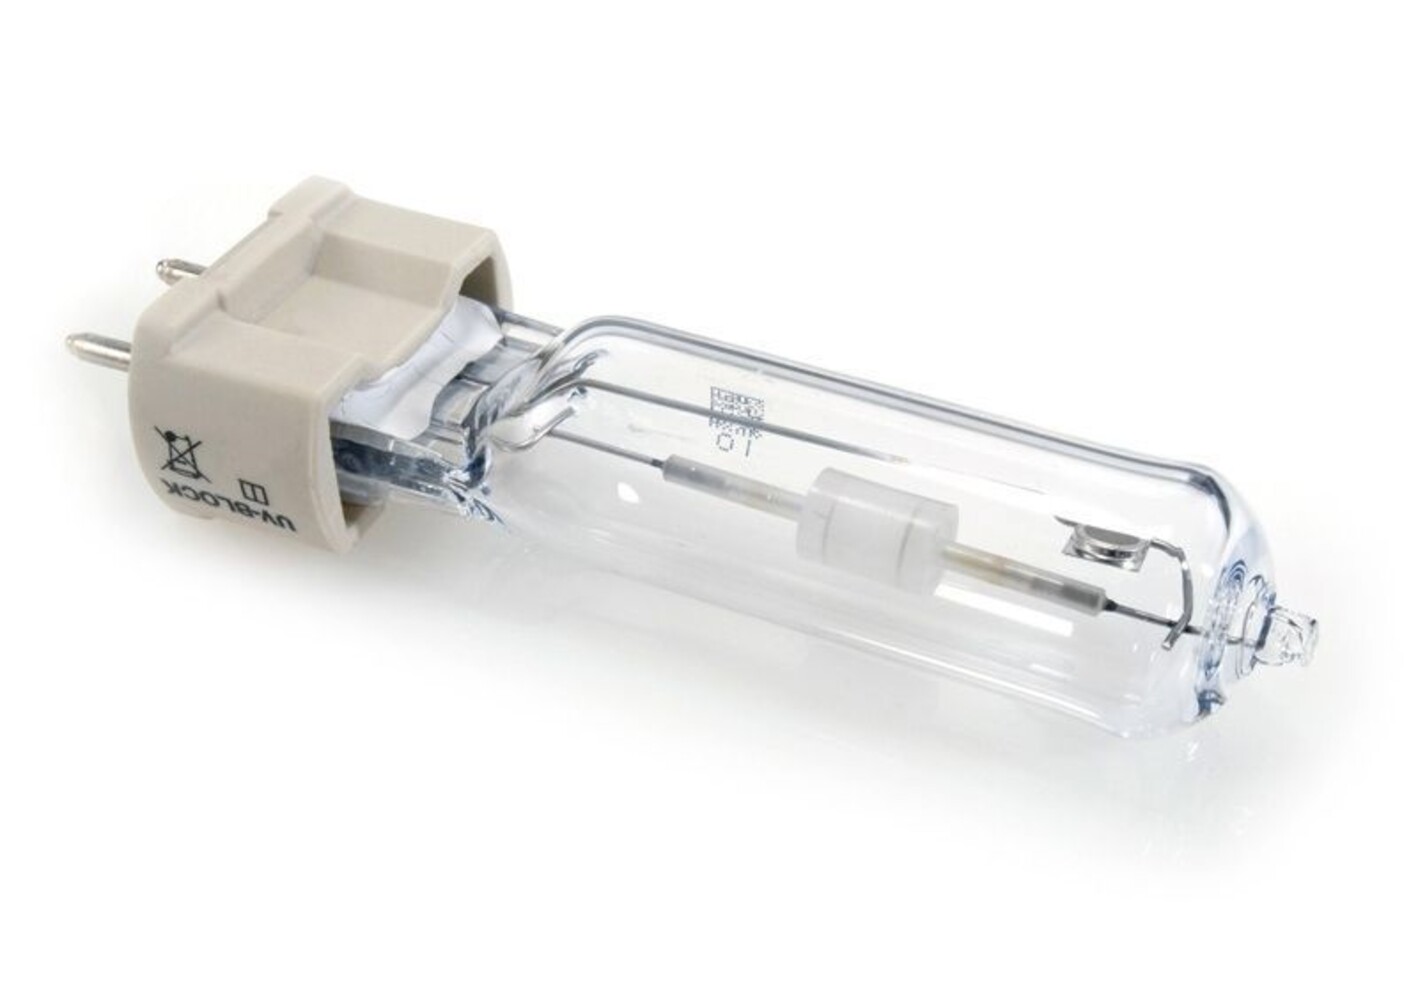 Hochwertiges Philips Leuchtmittel in Form einer Metalldampflampe - Vorschaltgerät erforderlich